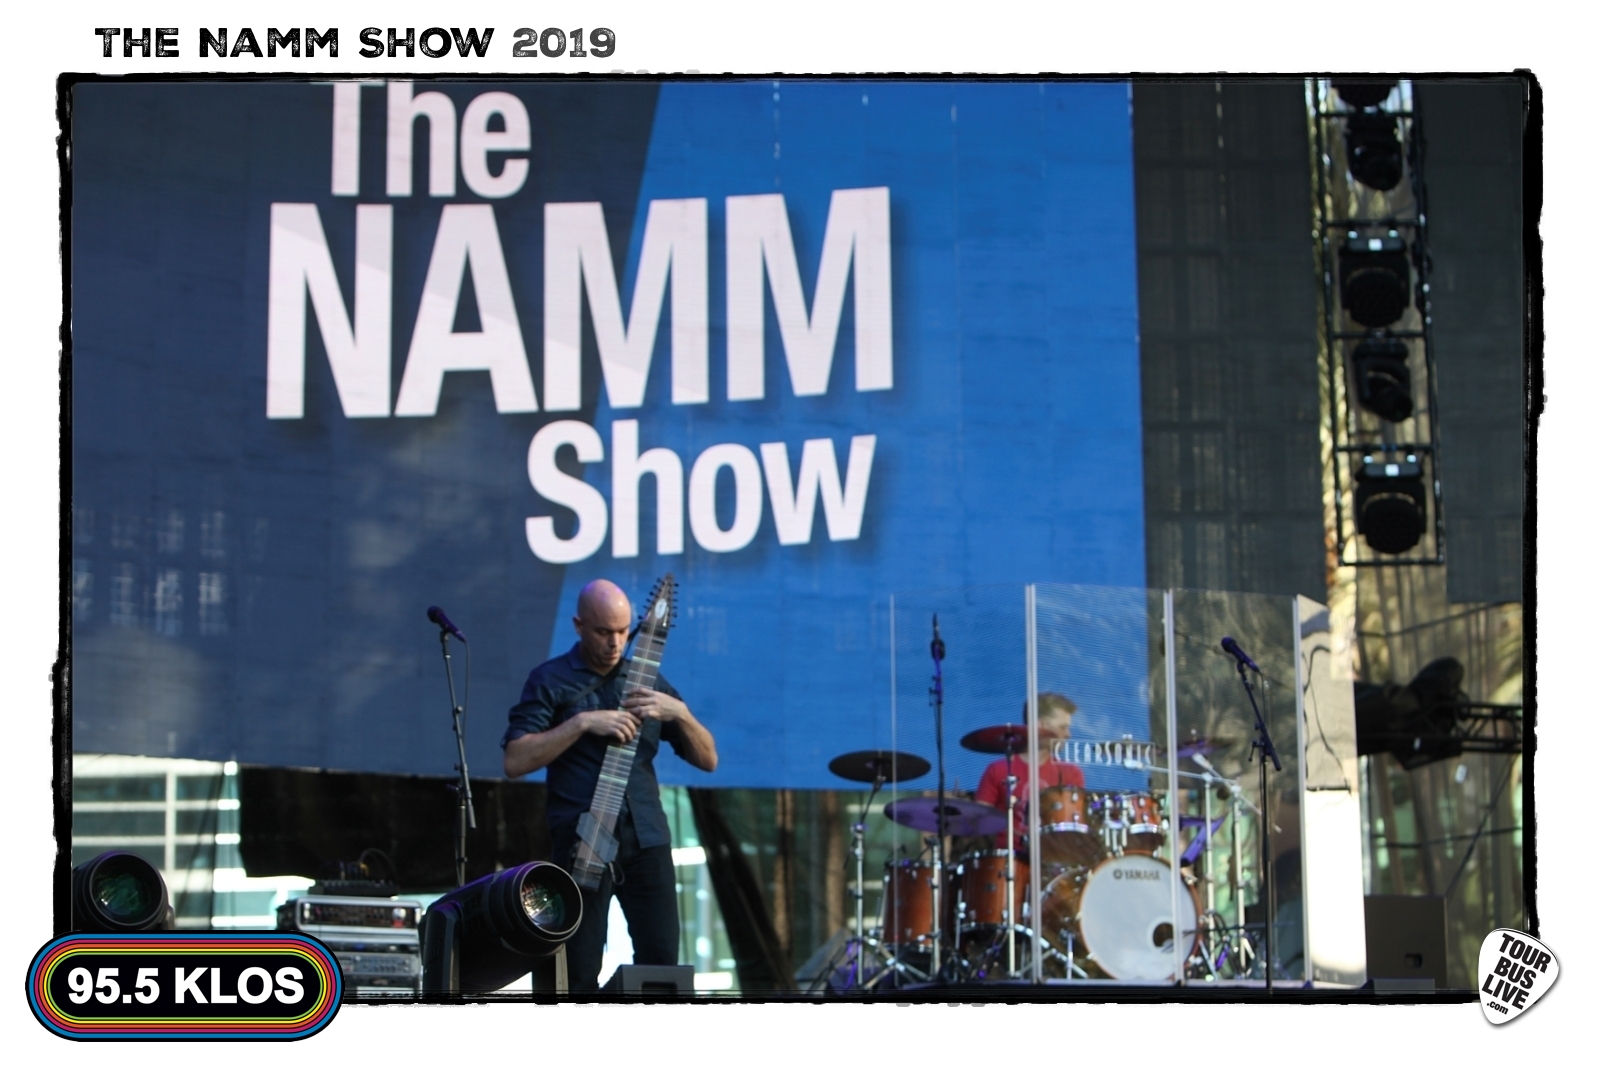 NAMM 2019. © 2019 TourBusLive.com